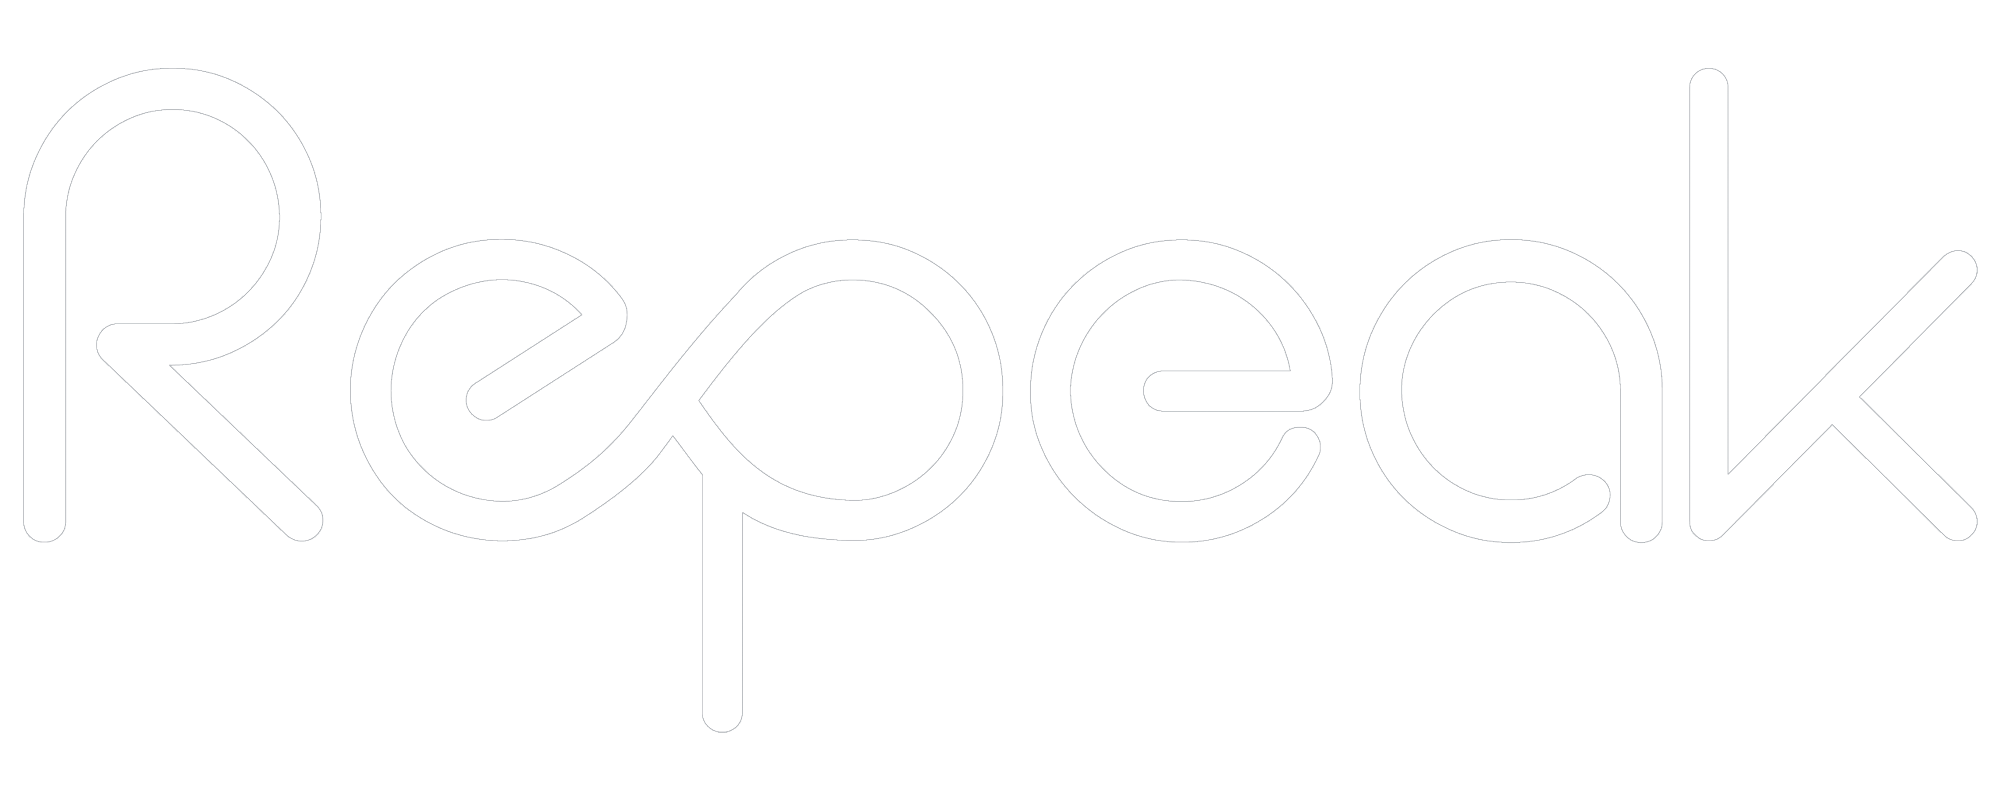 Repeak logo